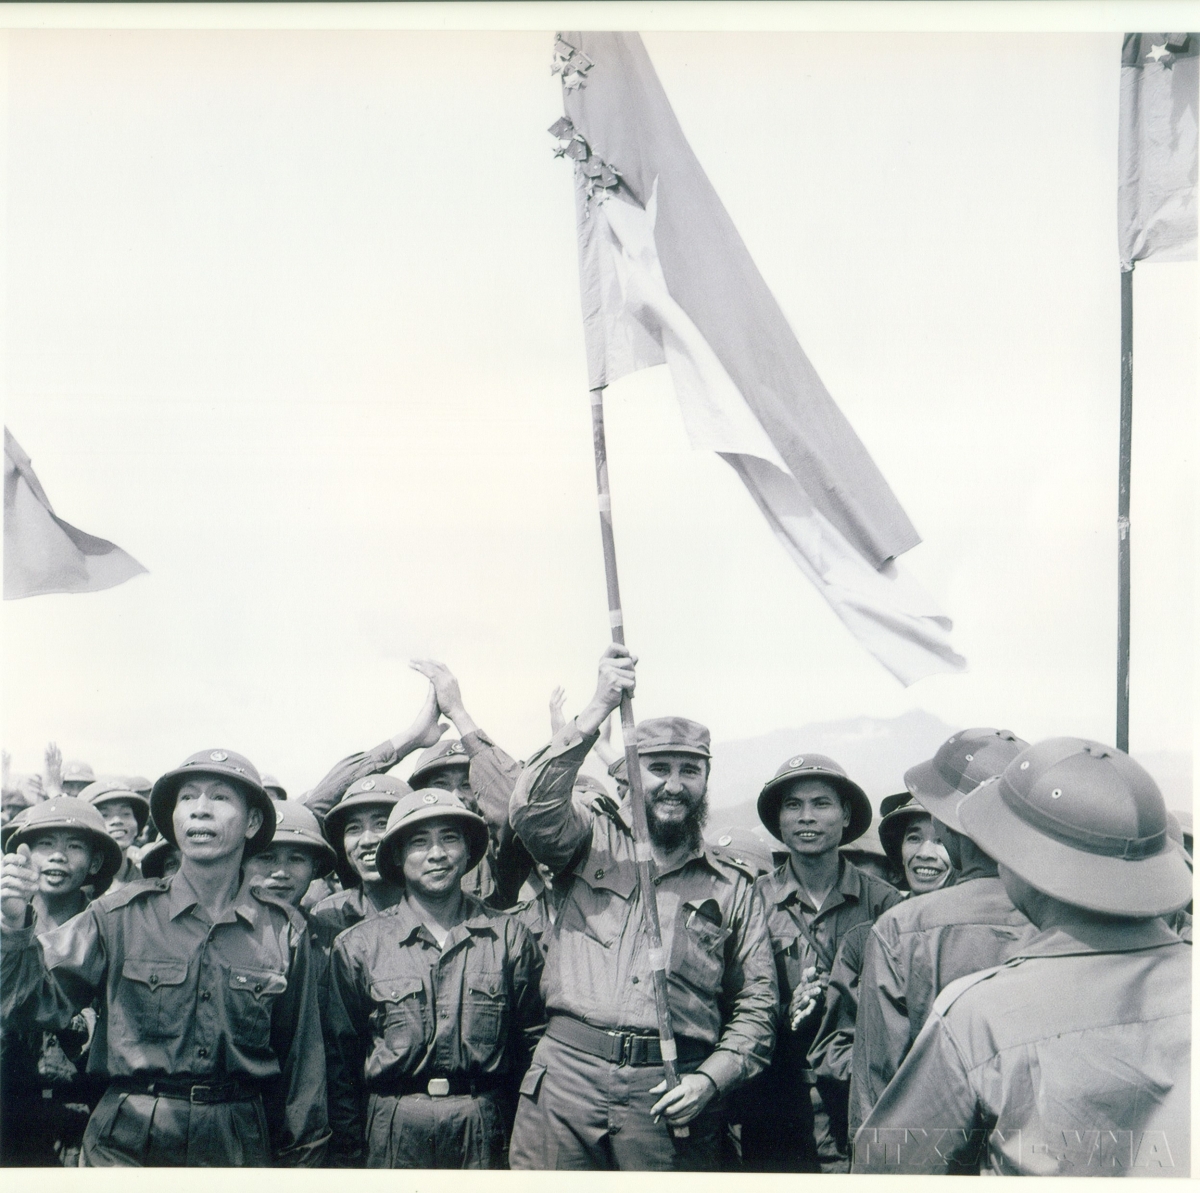 Trong chuyến thăm vùng giải phóng Quảng Trị tháng 9/1973, Thủ tướng Cuba Fidel Castro giương cao ngọn cờ truyền thống bách chiến, bách thắng, lấp lánh huân chương của Đoàn Khe Sanh, Quân giải phóng Trị Thiên Huế anh hùng.